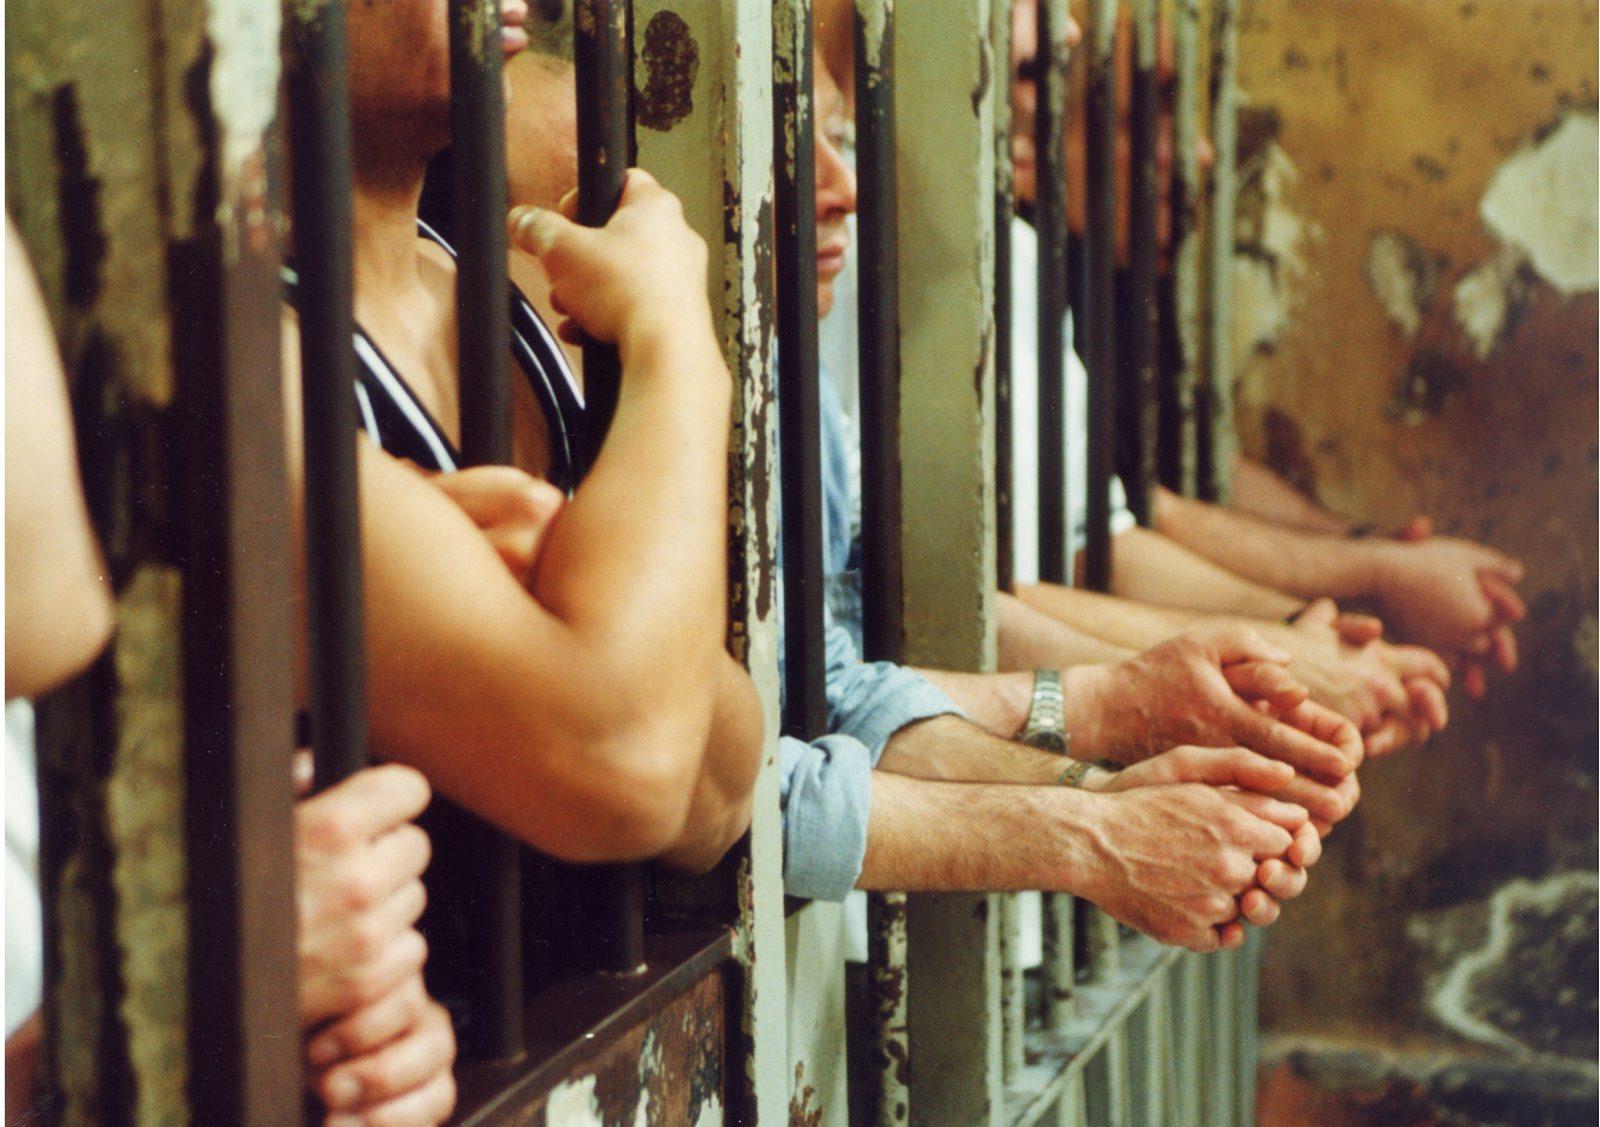 Carceri, la piaga del sovraffollamento e l'aumento dei suicidi nelle celle